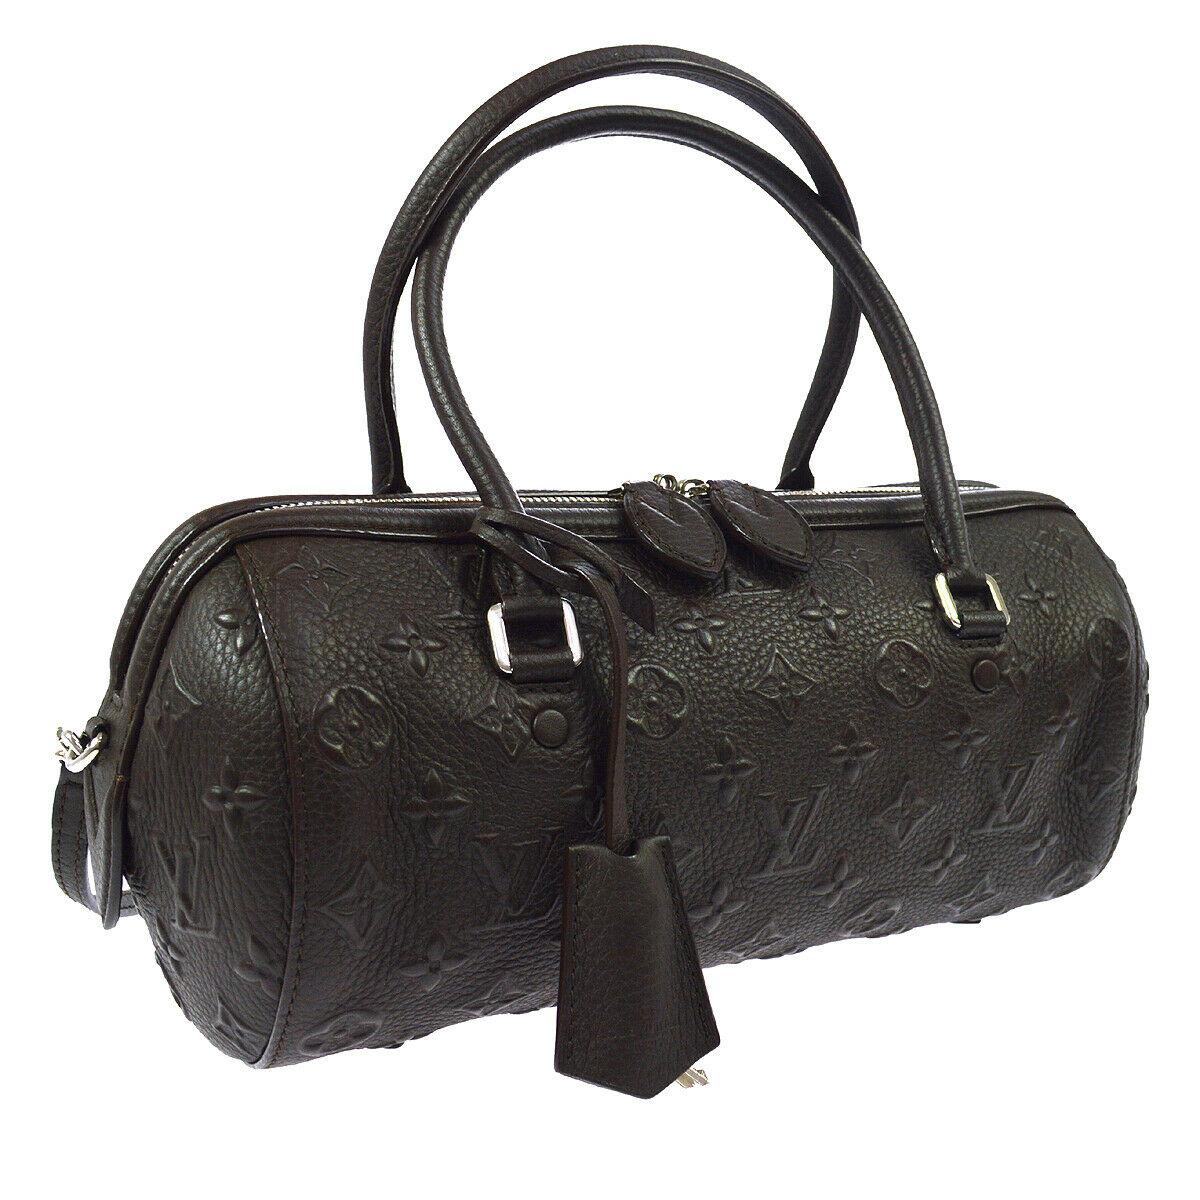 Black Louis Vuitton Monogram Choc Brown Leather Top Handle Satchel Shoulder Bag